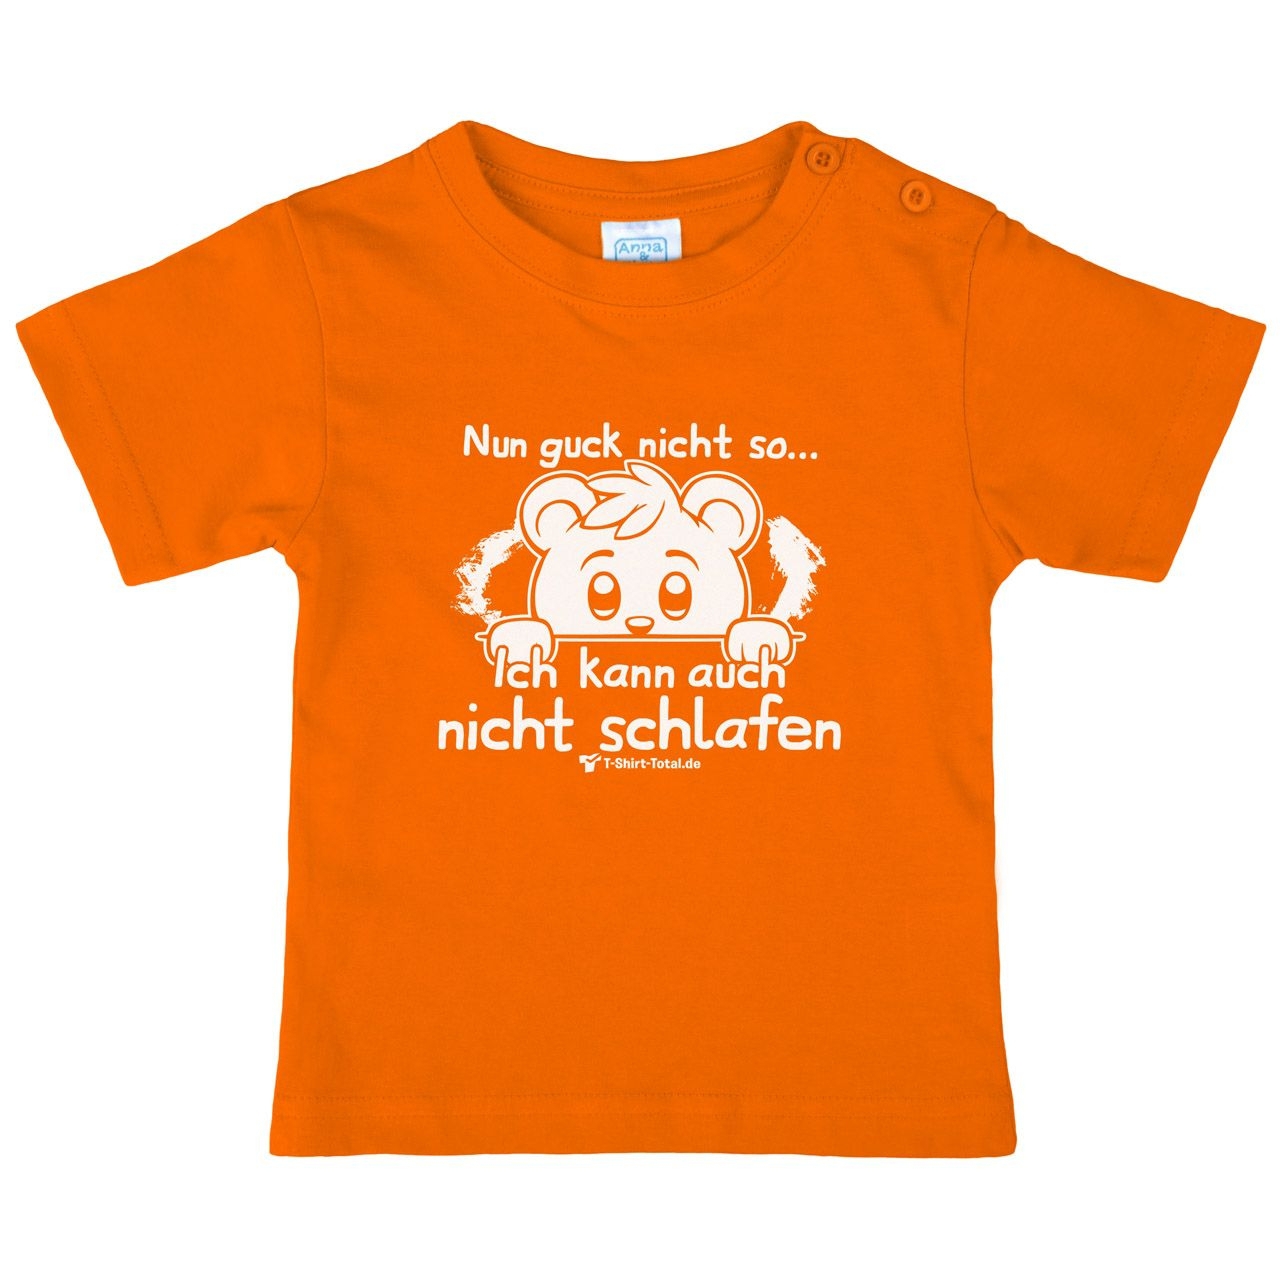 Guck nicht so Kinder T-Shirt orange 68 / 74